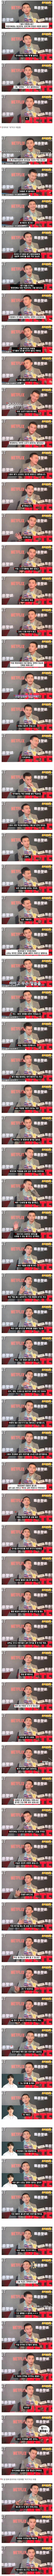 대만 배우 장첸이 말하는 수리남 촬영 비하인드